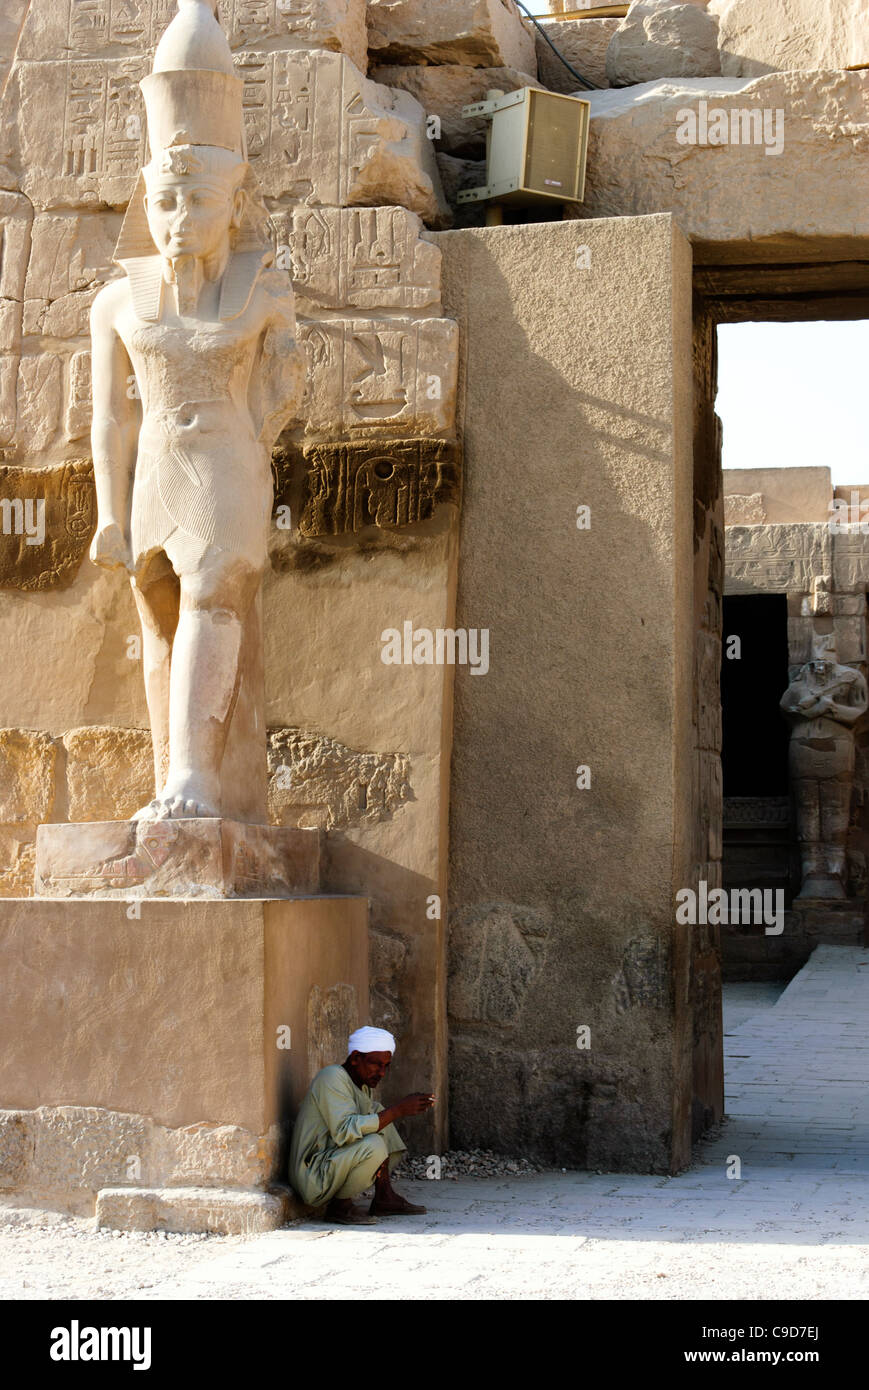 Tempio di Ramses III, entrata principale - Tempio di Karnak complesso - Luxor, l'Alto Egitto Foto Stock